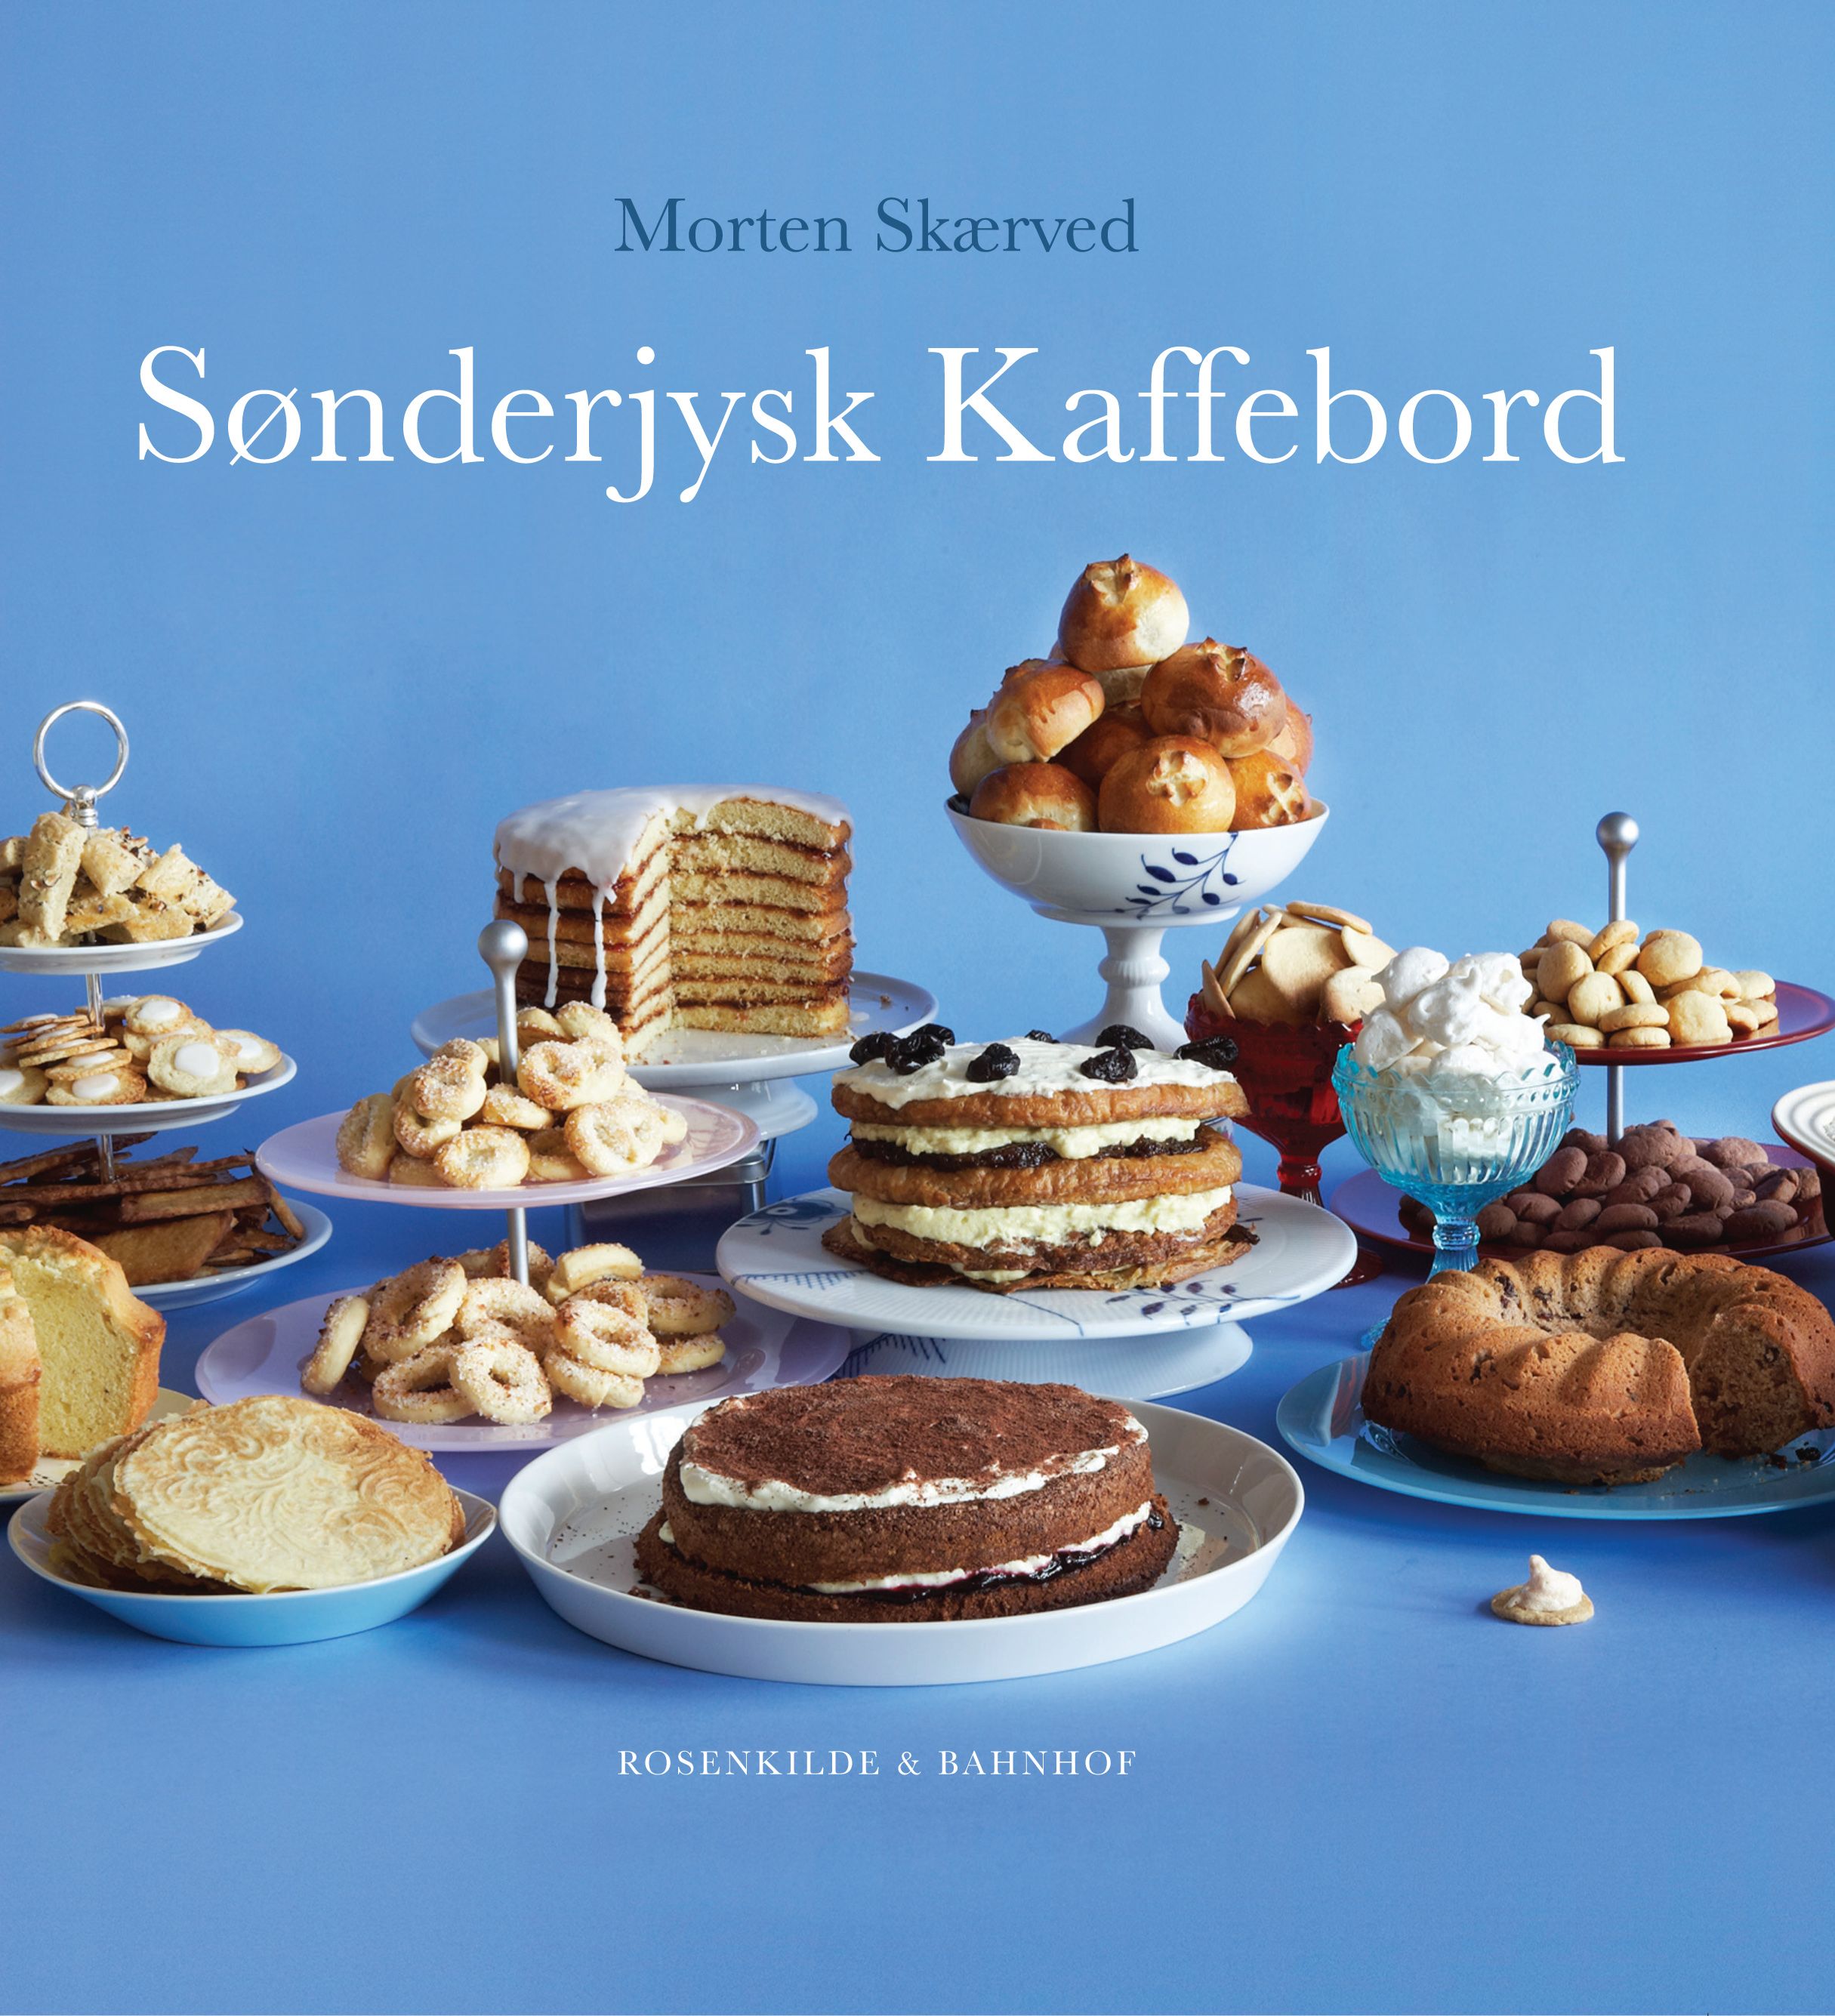 Sønderjysk kaffebord, e-bok av Morten Skærved